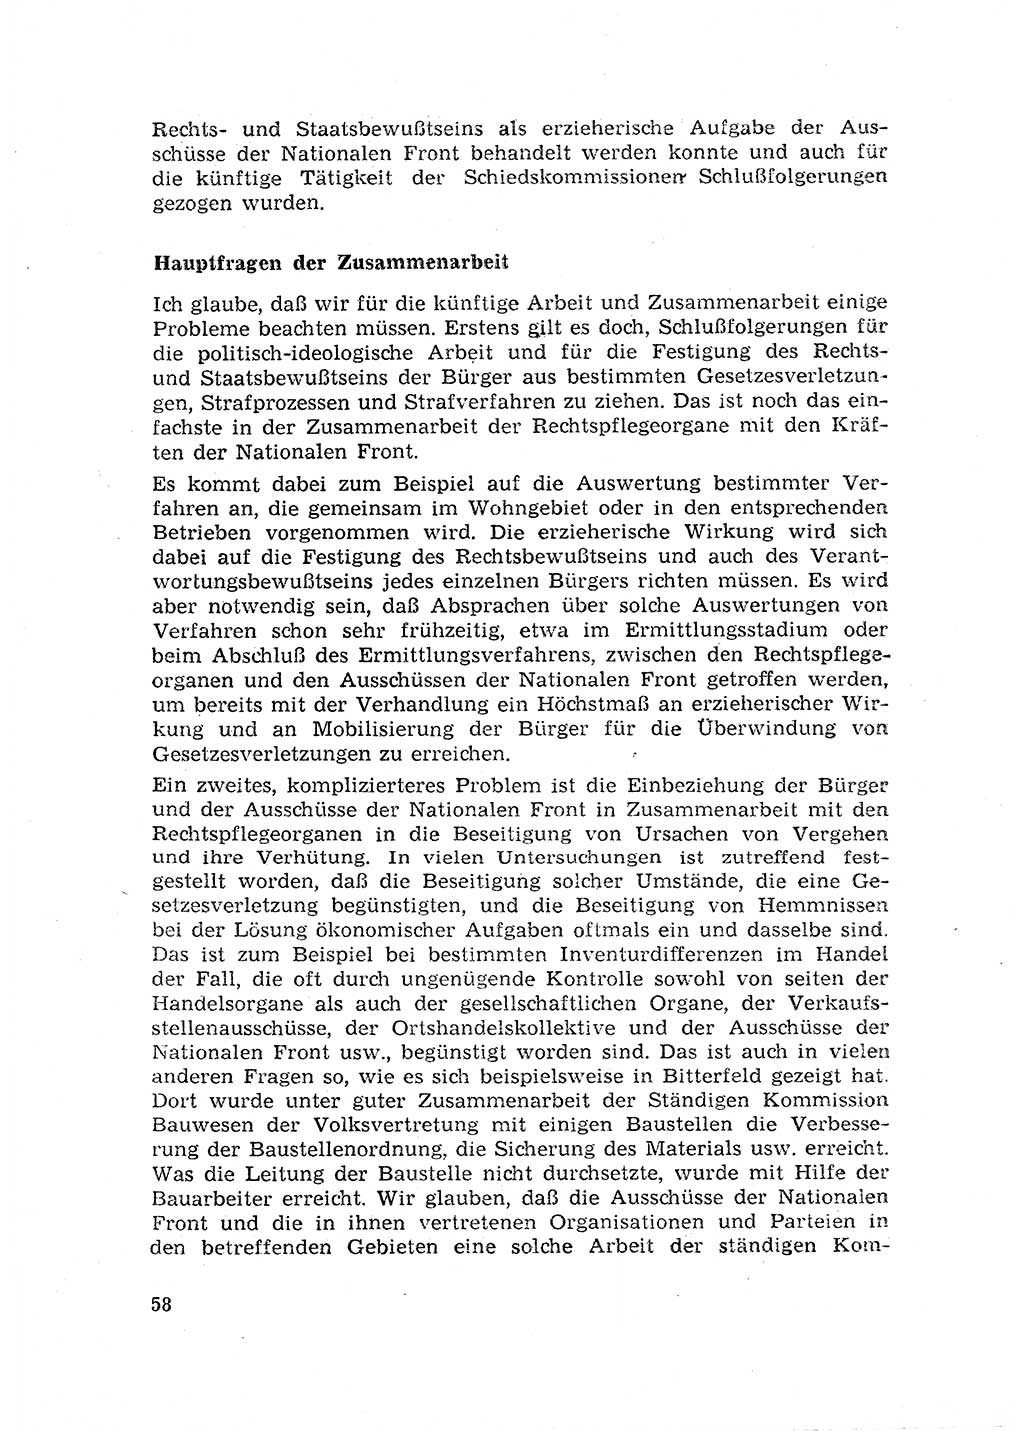 Rechtspflegeerlaß [Deutsche Demokratische Republik (DDR)] 1963, Seite 58 (R.-Pfl.-Erl. DDR 1963, S. 58)